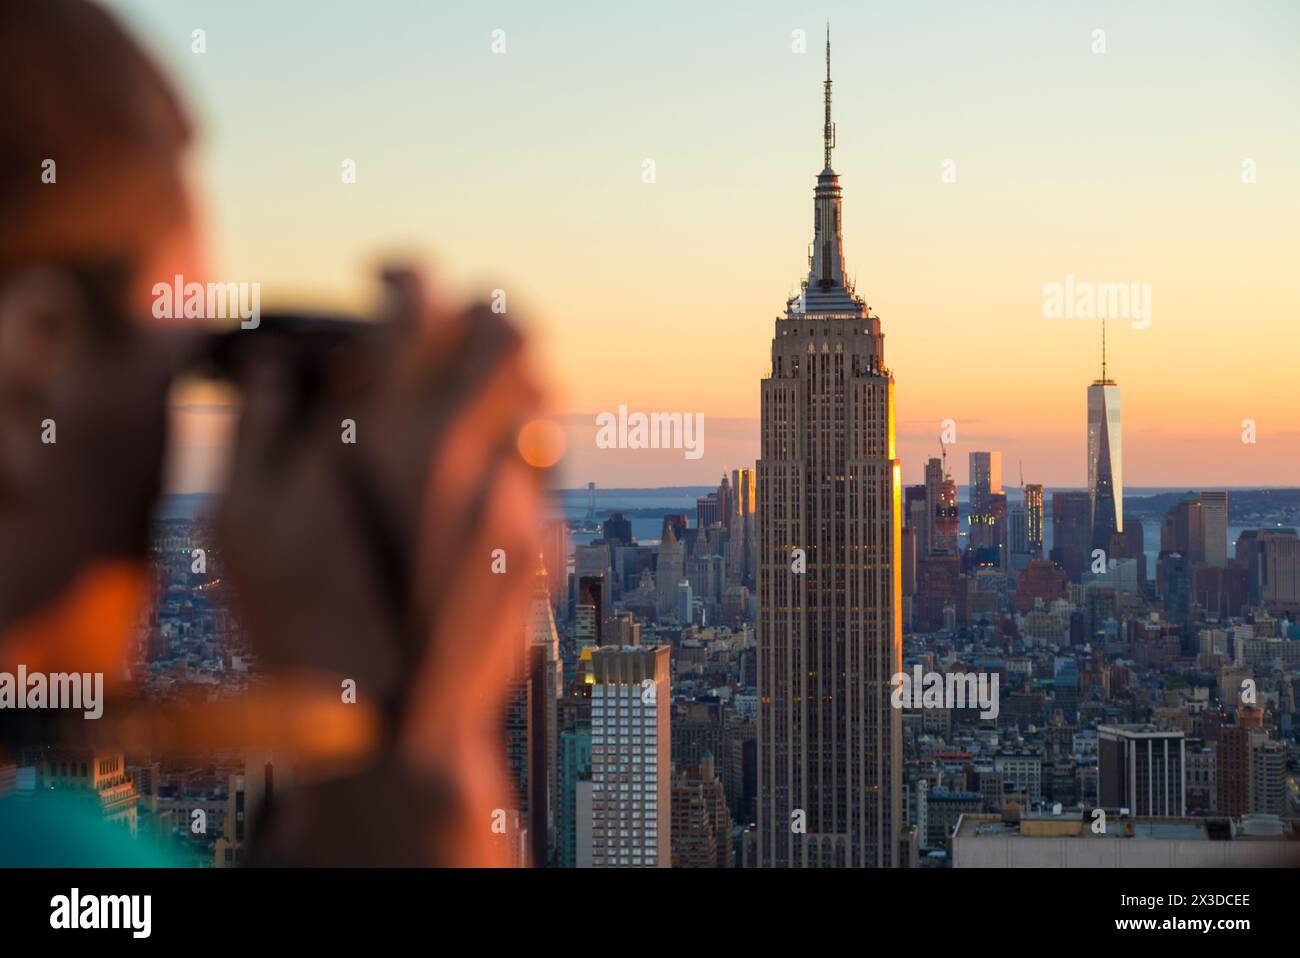 Homme avec appareil photo photographiant la vue sur l'Empire State Building & skyline, Manhattan, New York, États-Unis Banque D'Images